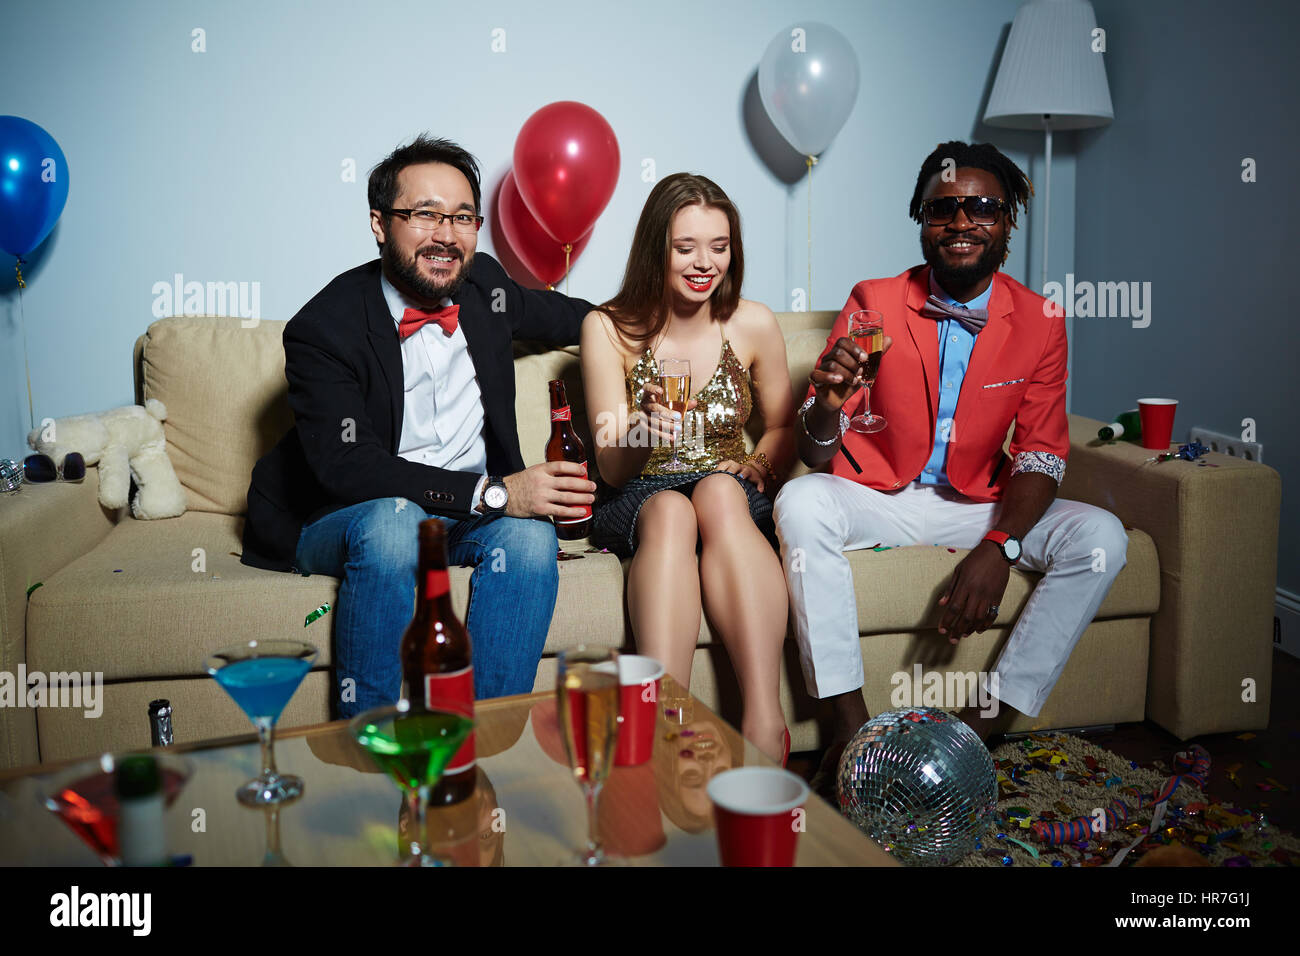 Deux hommes barbus avec bouteille de bière et champagne flute looking at camera while leur jolie femme ami assis entre eux Banque D'Images